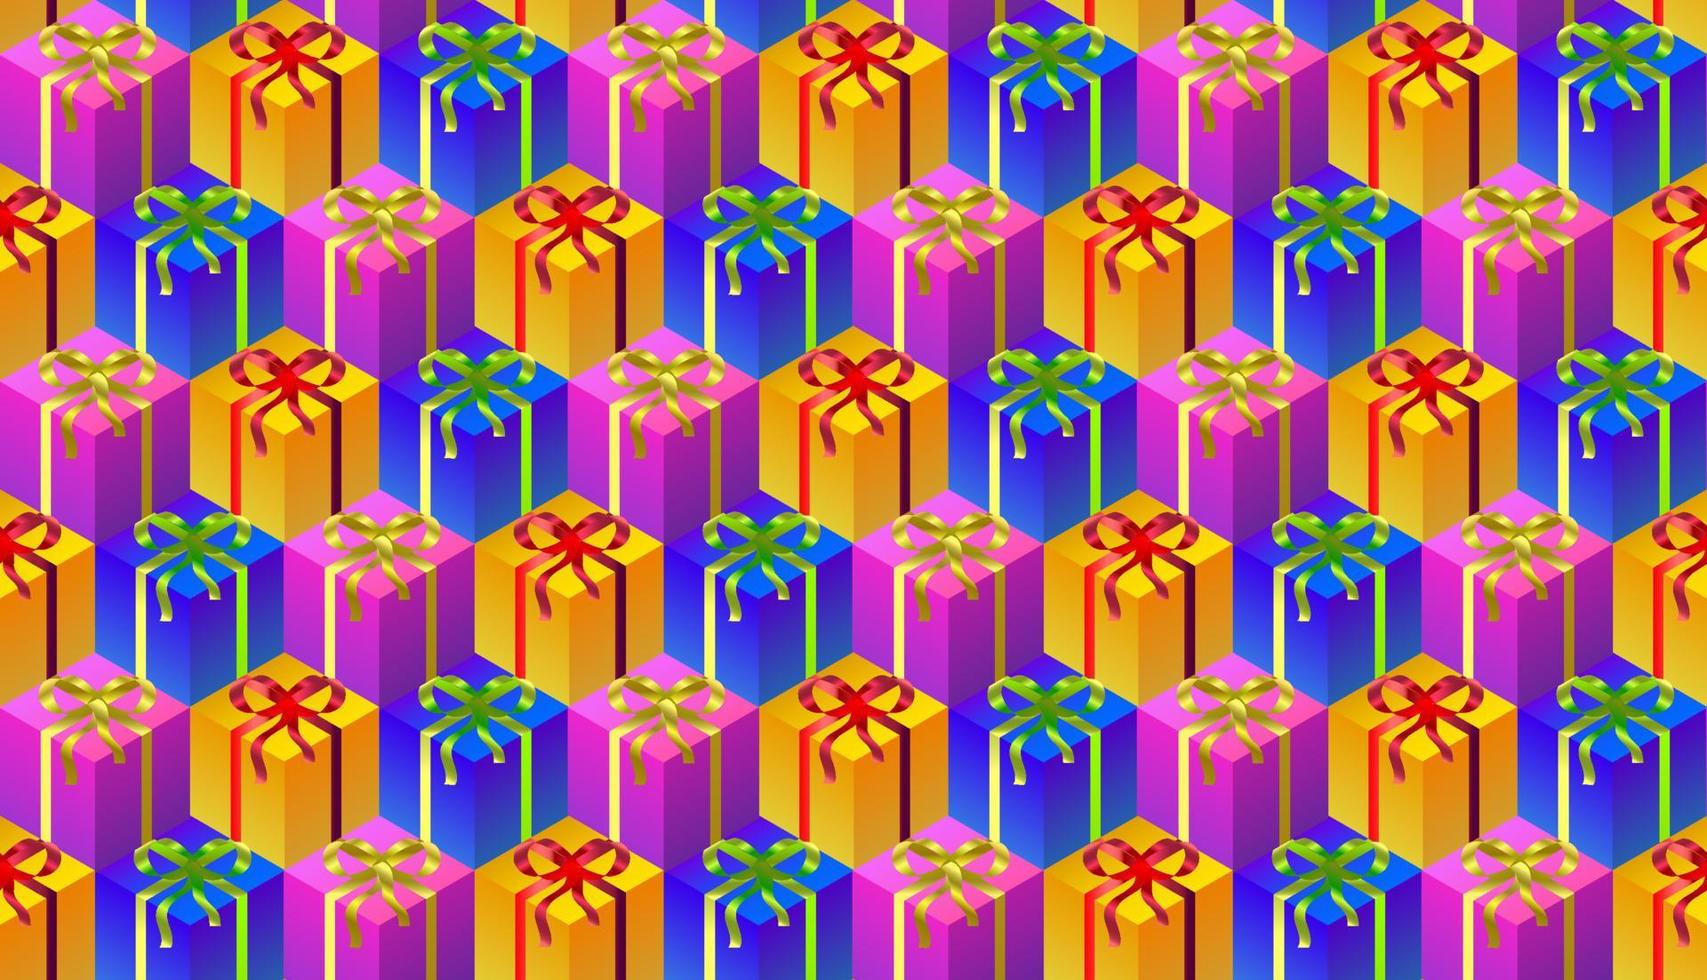 kleurrijke geschenkdozen naadloos patroon. gele blauwe en paarse dozen 3D-rendering, herhalend naadloos patroon. vector